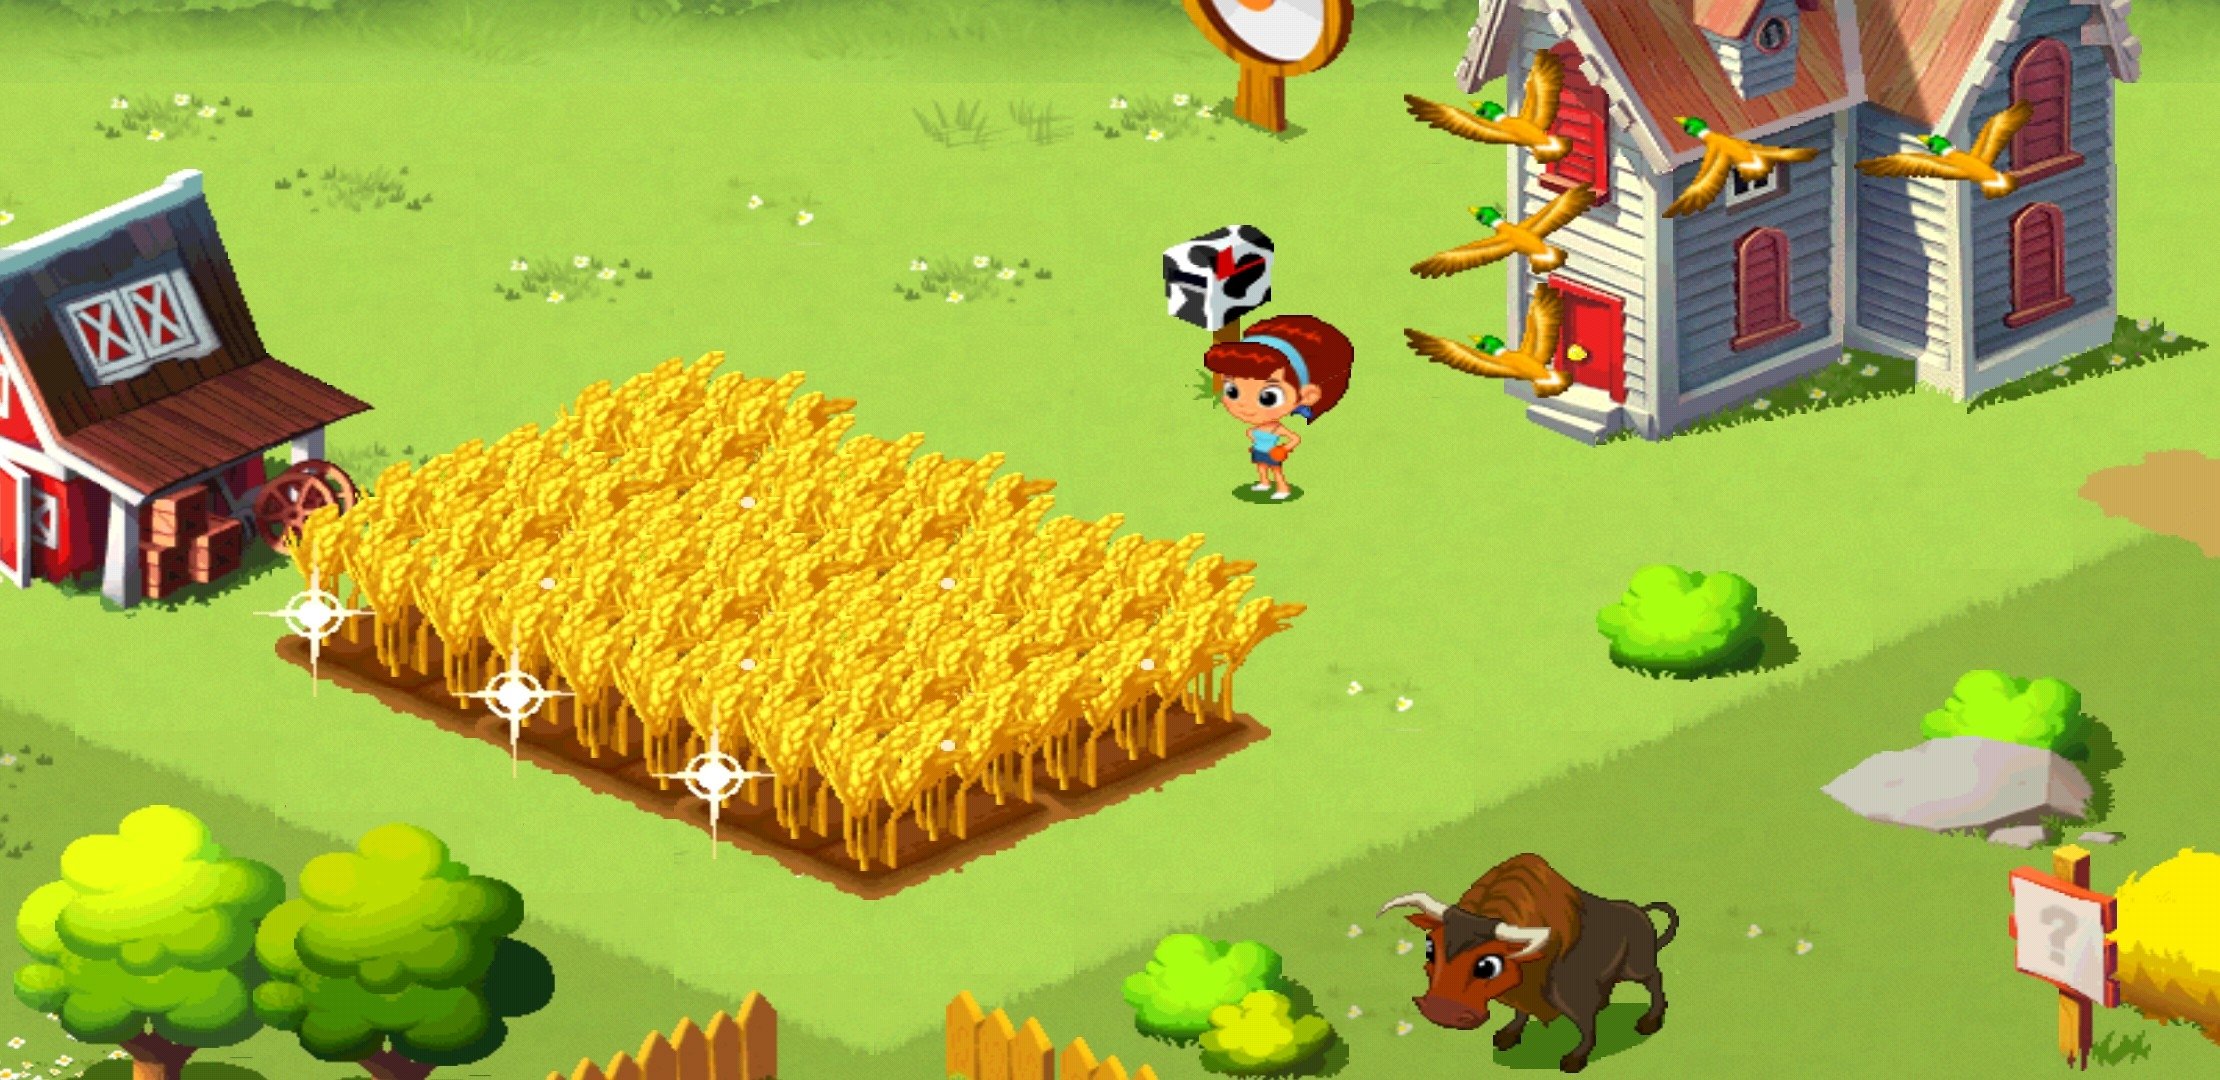 green farm 3 game